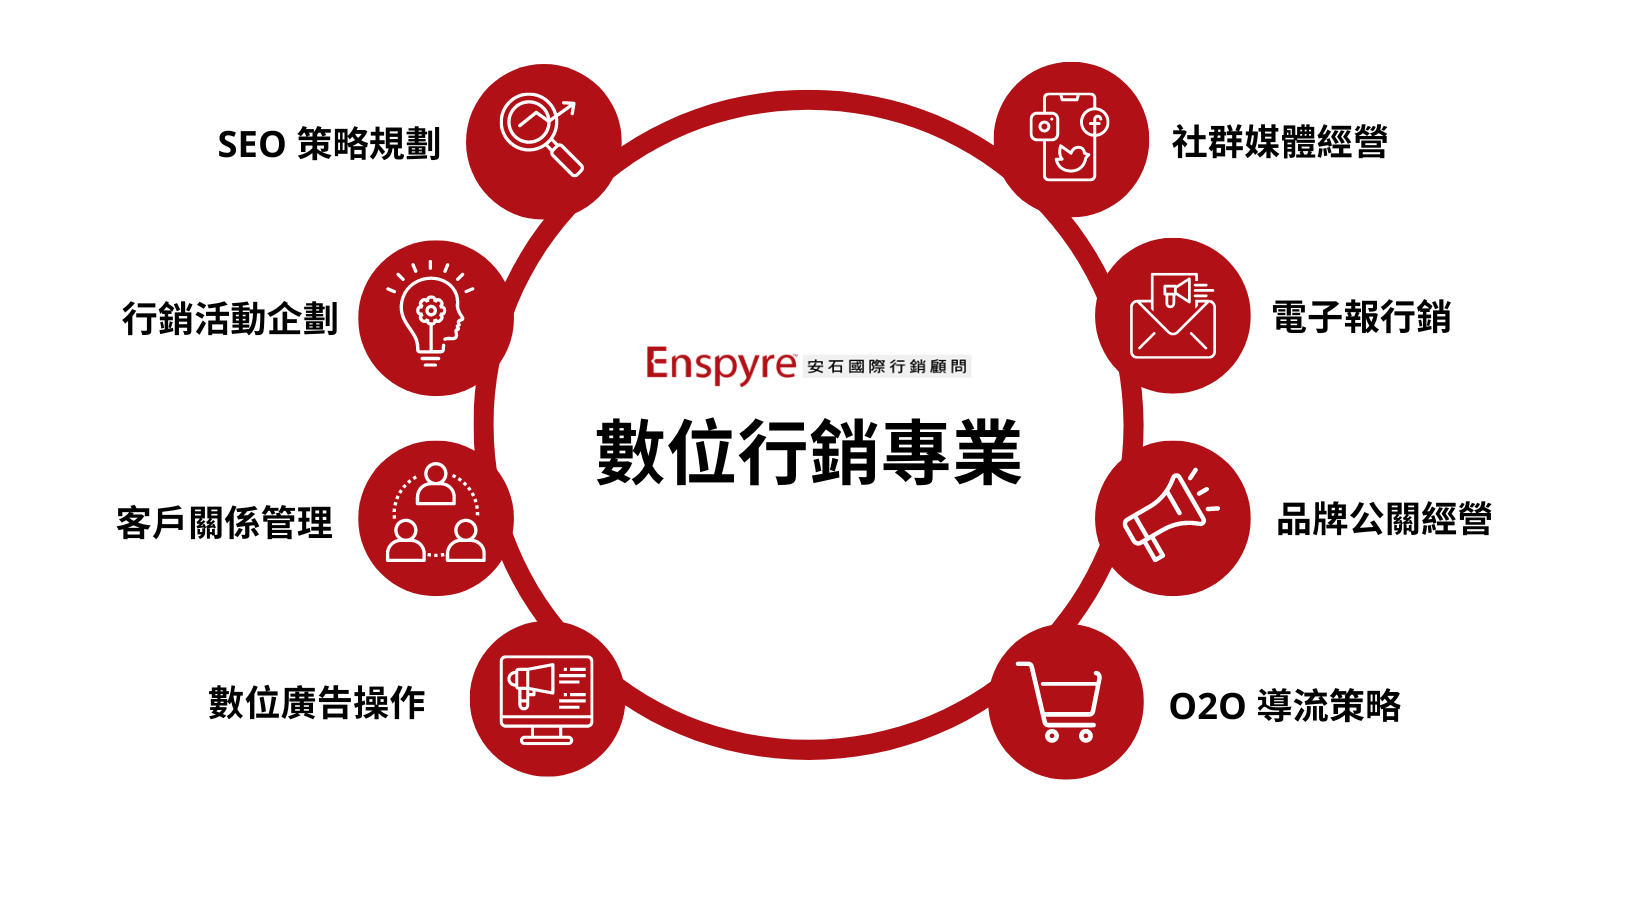 安石數位行銷專業 - Enspyre 安石國際